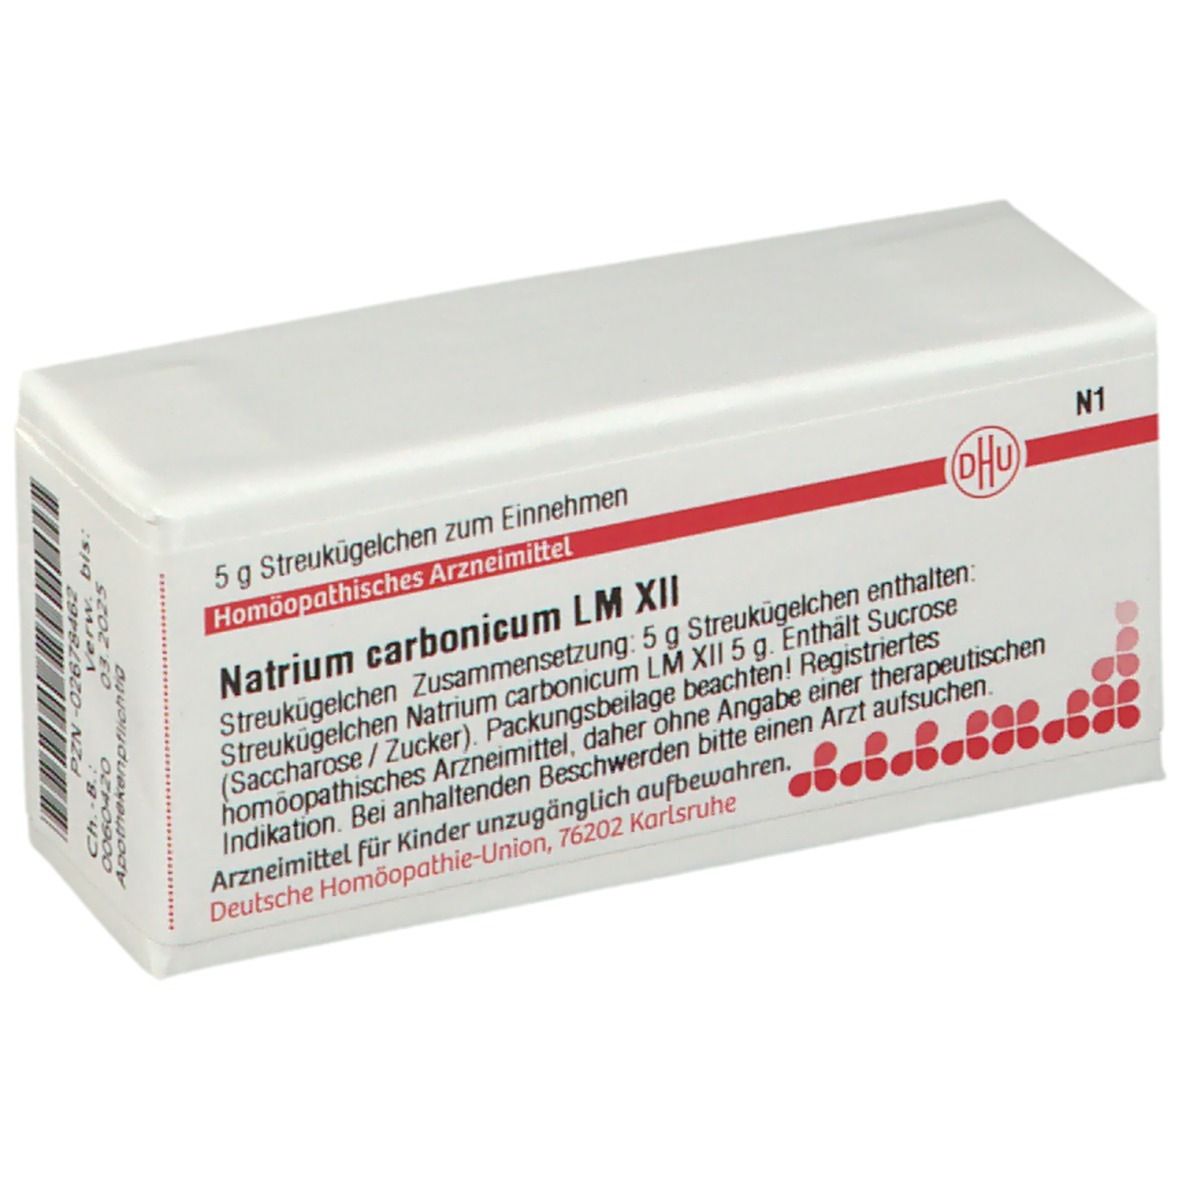 DHU Natrium Carbonicum LM XII